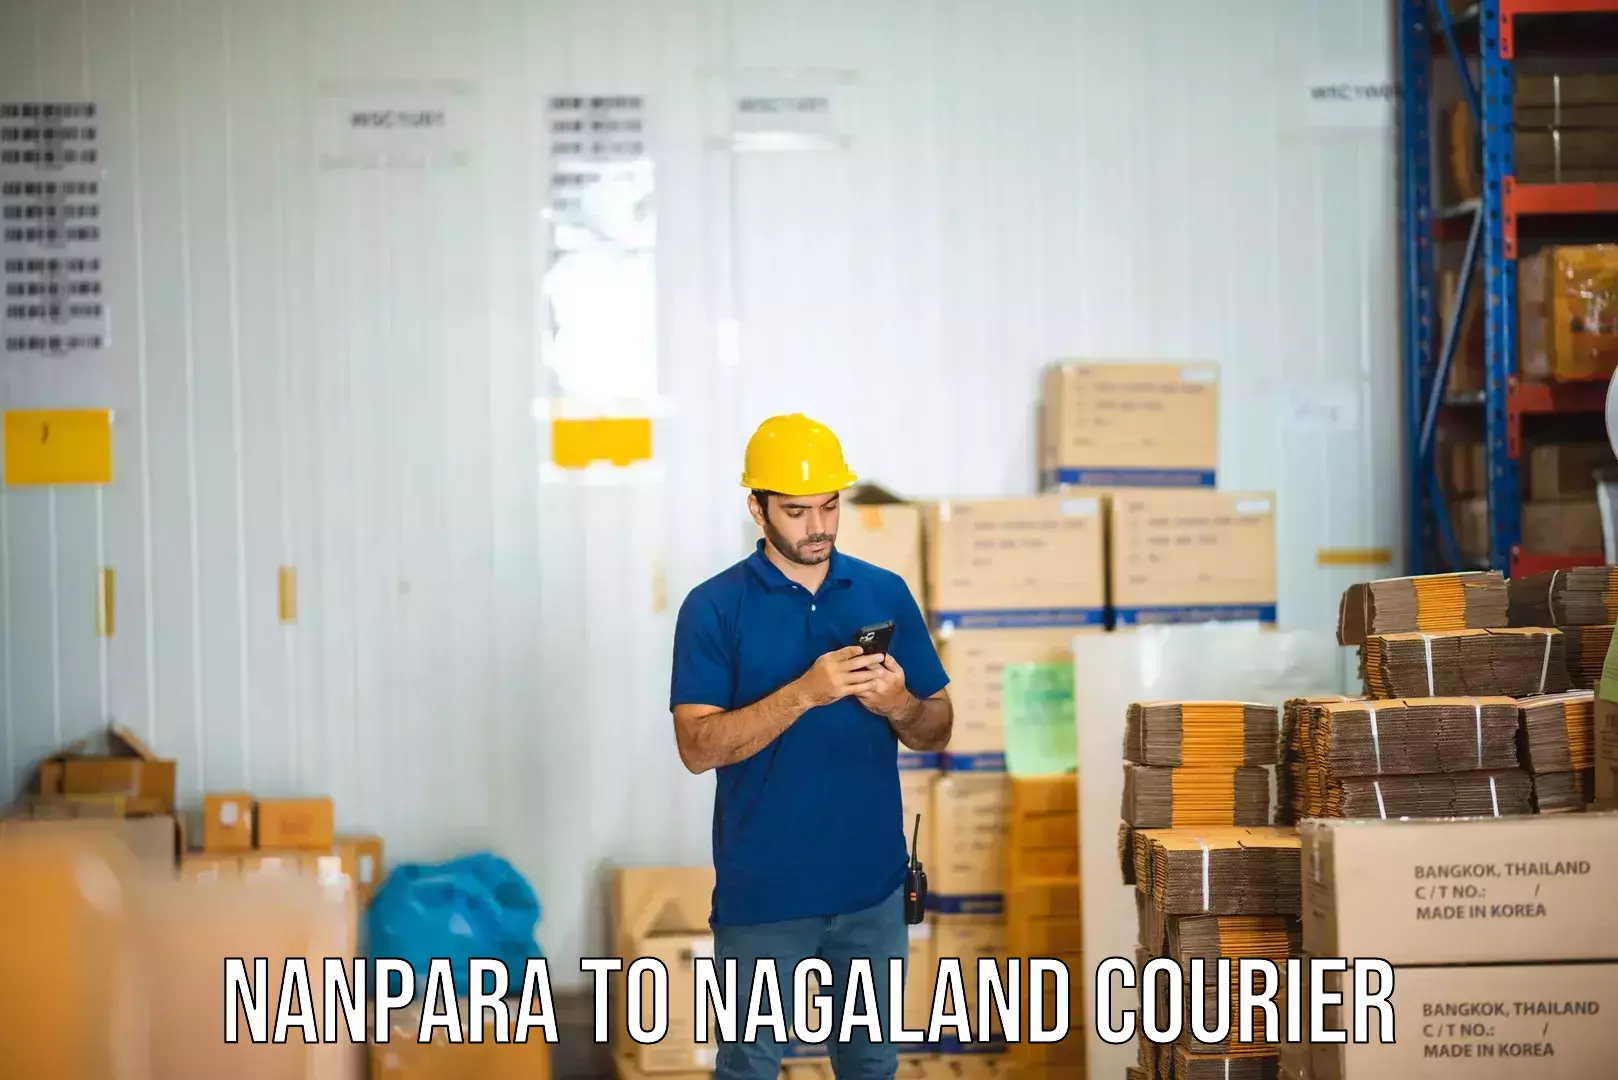 Parcel handling and care Nanpara to Nagaland